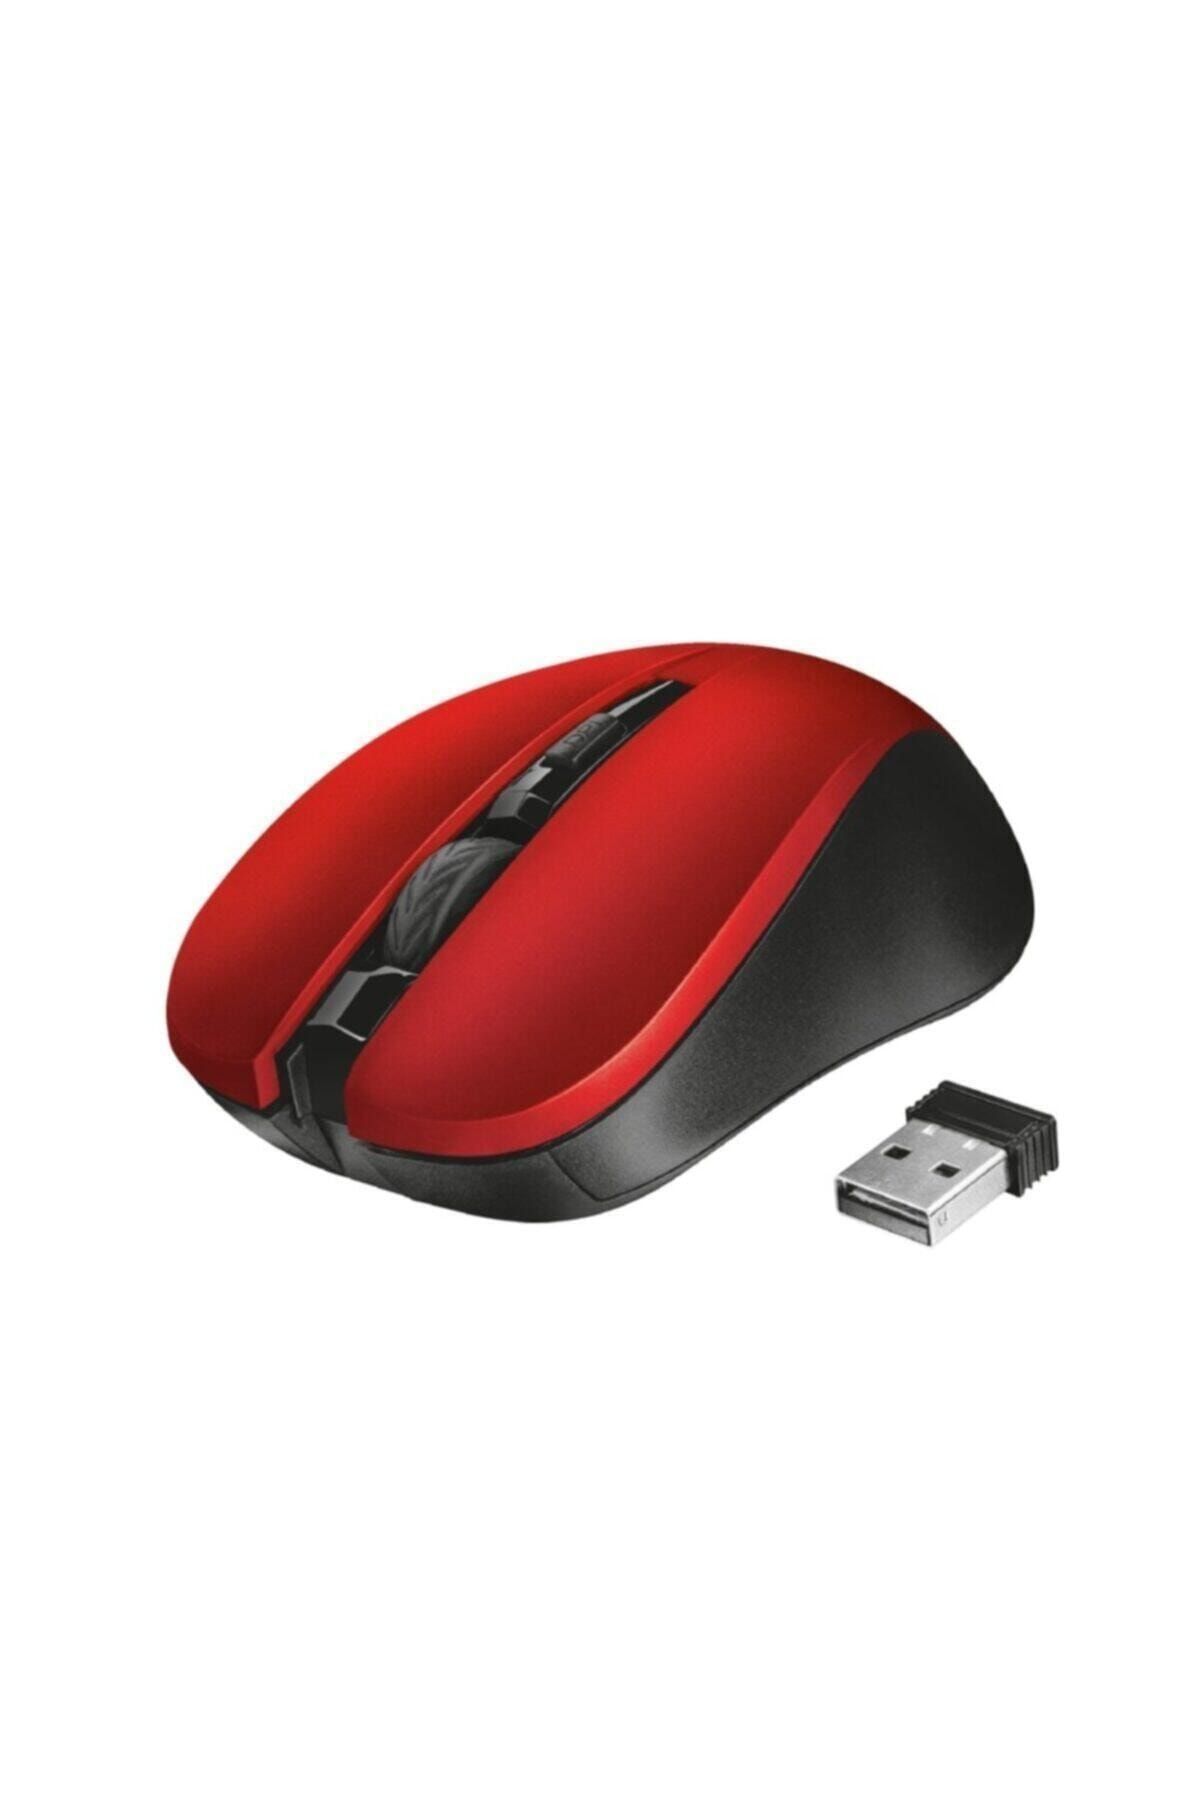 Мышь Trust primo Mouse with Mouse Pad Red USB. Trust Sketch Silent Wireless Mouse Red. Мышь Trust Liquid Love Mouse Red USB. Мышь Trust Mydo Silent WL Black. Беспроводная мышь красная